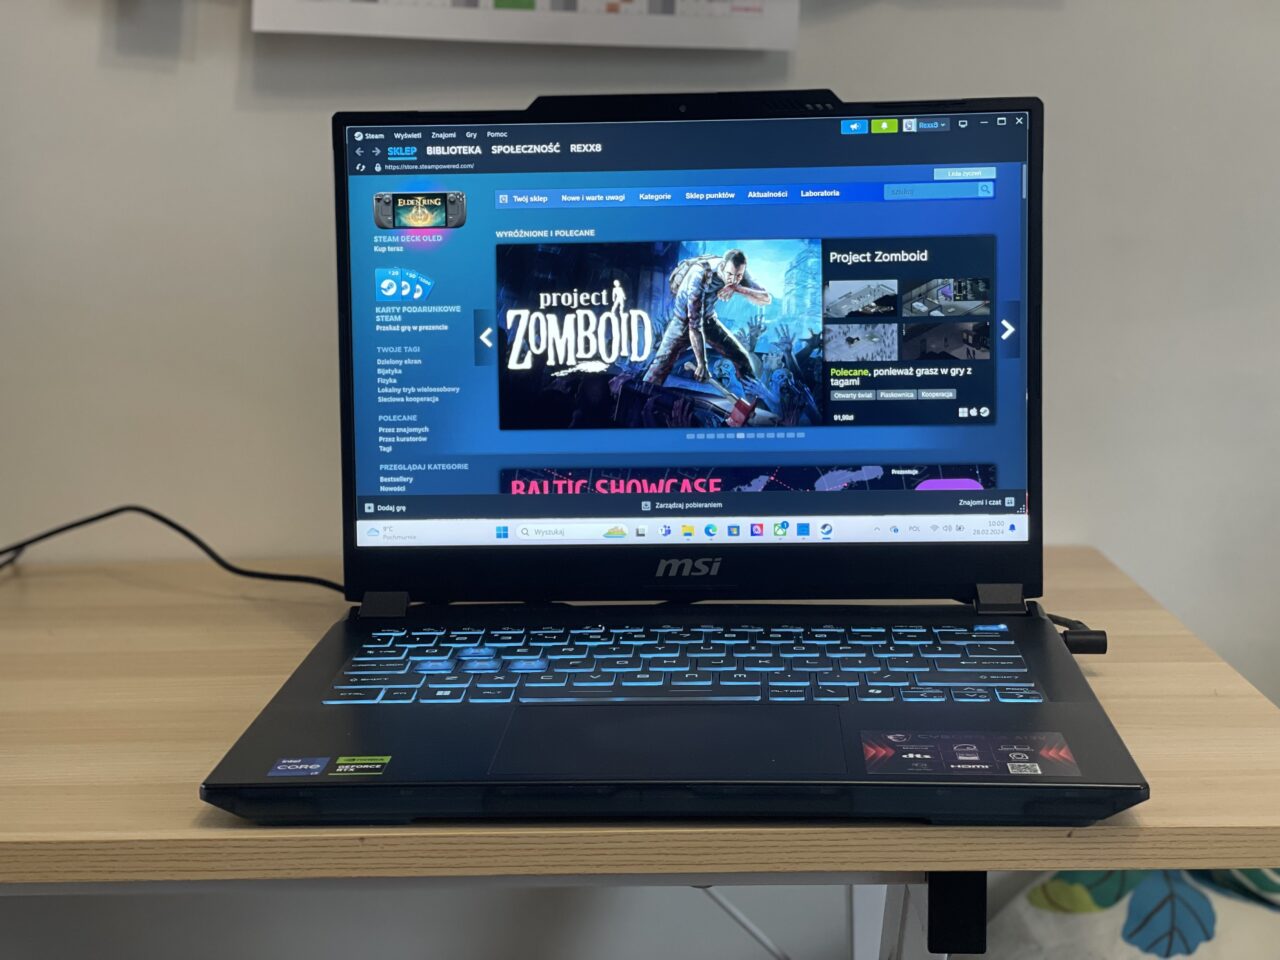 Laptop gamingowy MSI na biurku z włączoną stroną platformy dystrybucji gier Steam w przeglądarce internetowej.